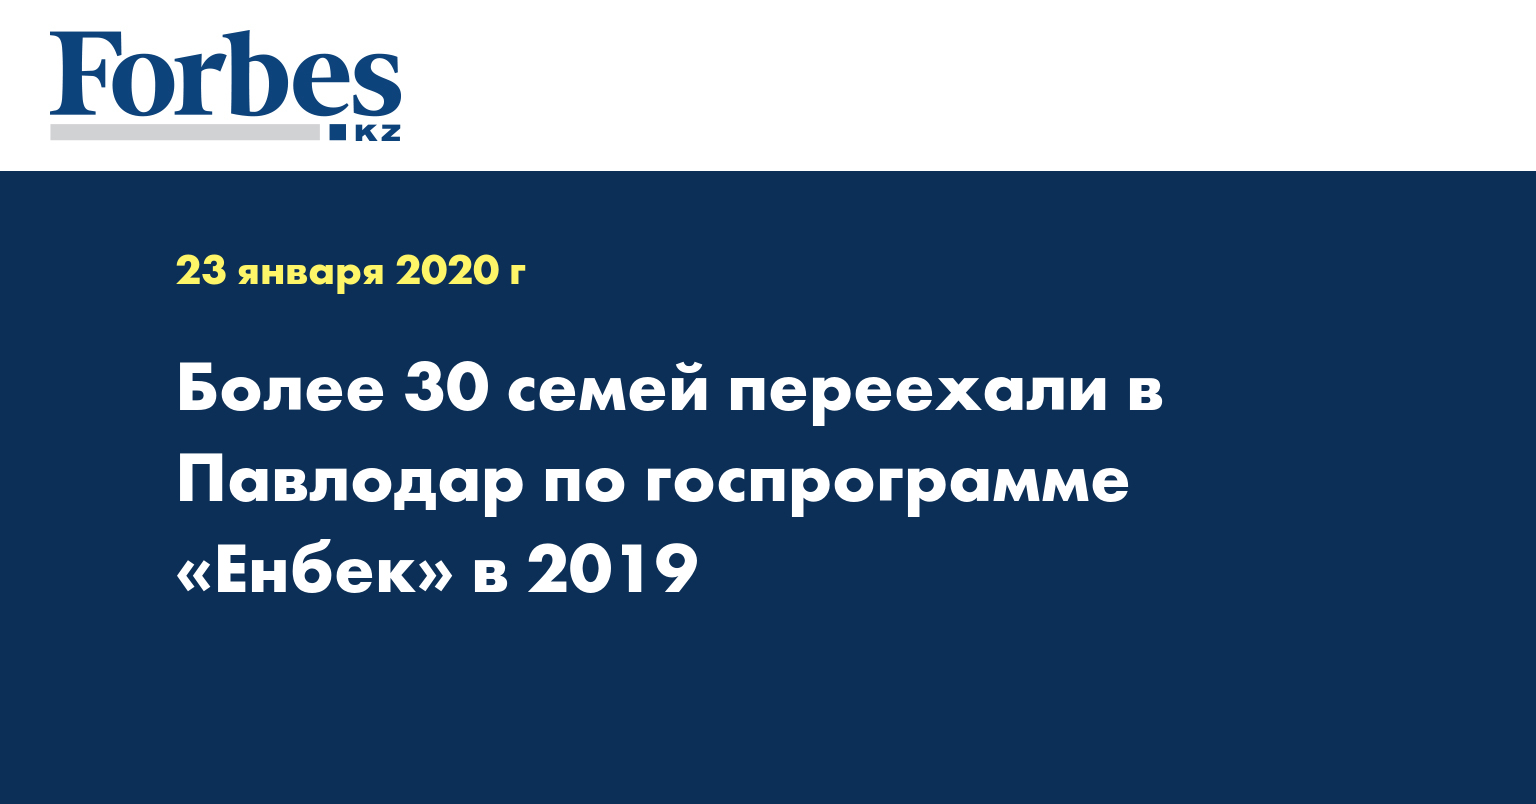 Более 30 семей переехали в Павлодар по госпрограмме «Енбек» в 2019 